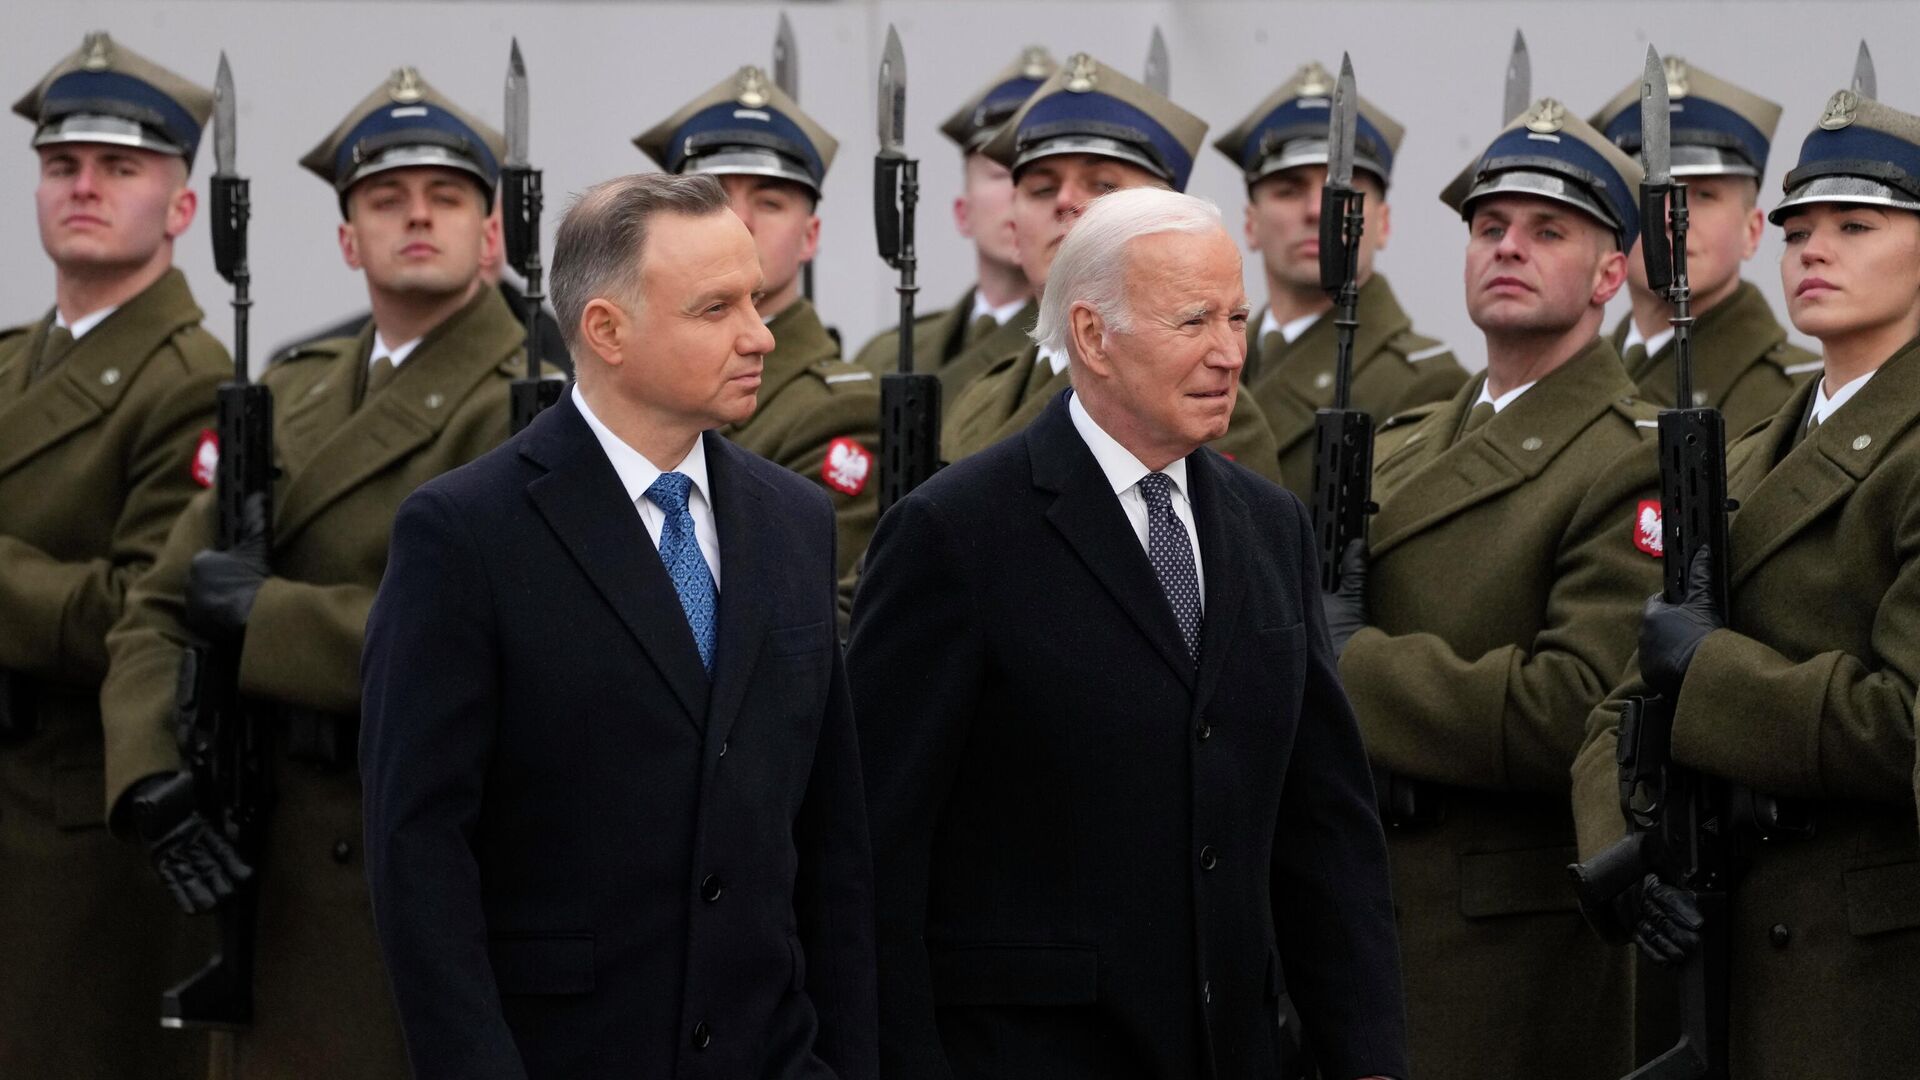 Президент Польши Анджей Дуда и президент США Джо Байден в Варшаве, Польша. 21 февраля 2023 года - ИноСМИ, 1920, 19.04.2023